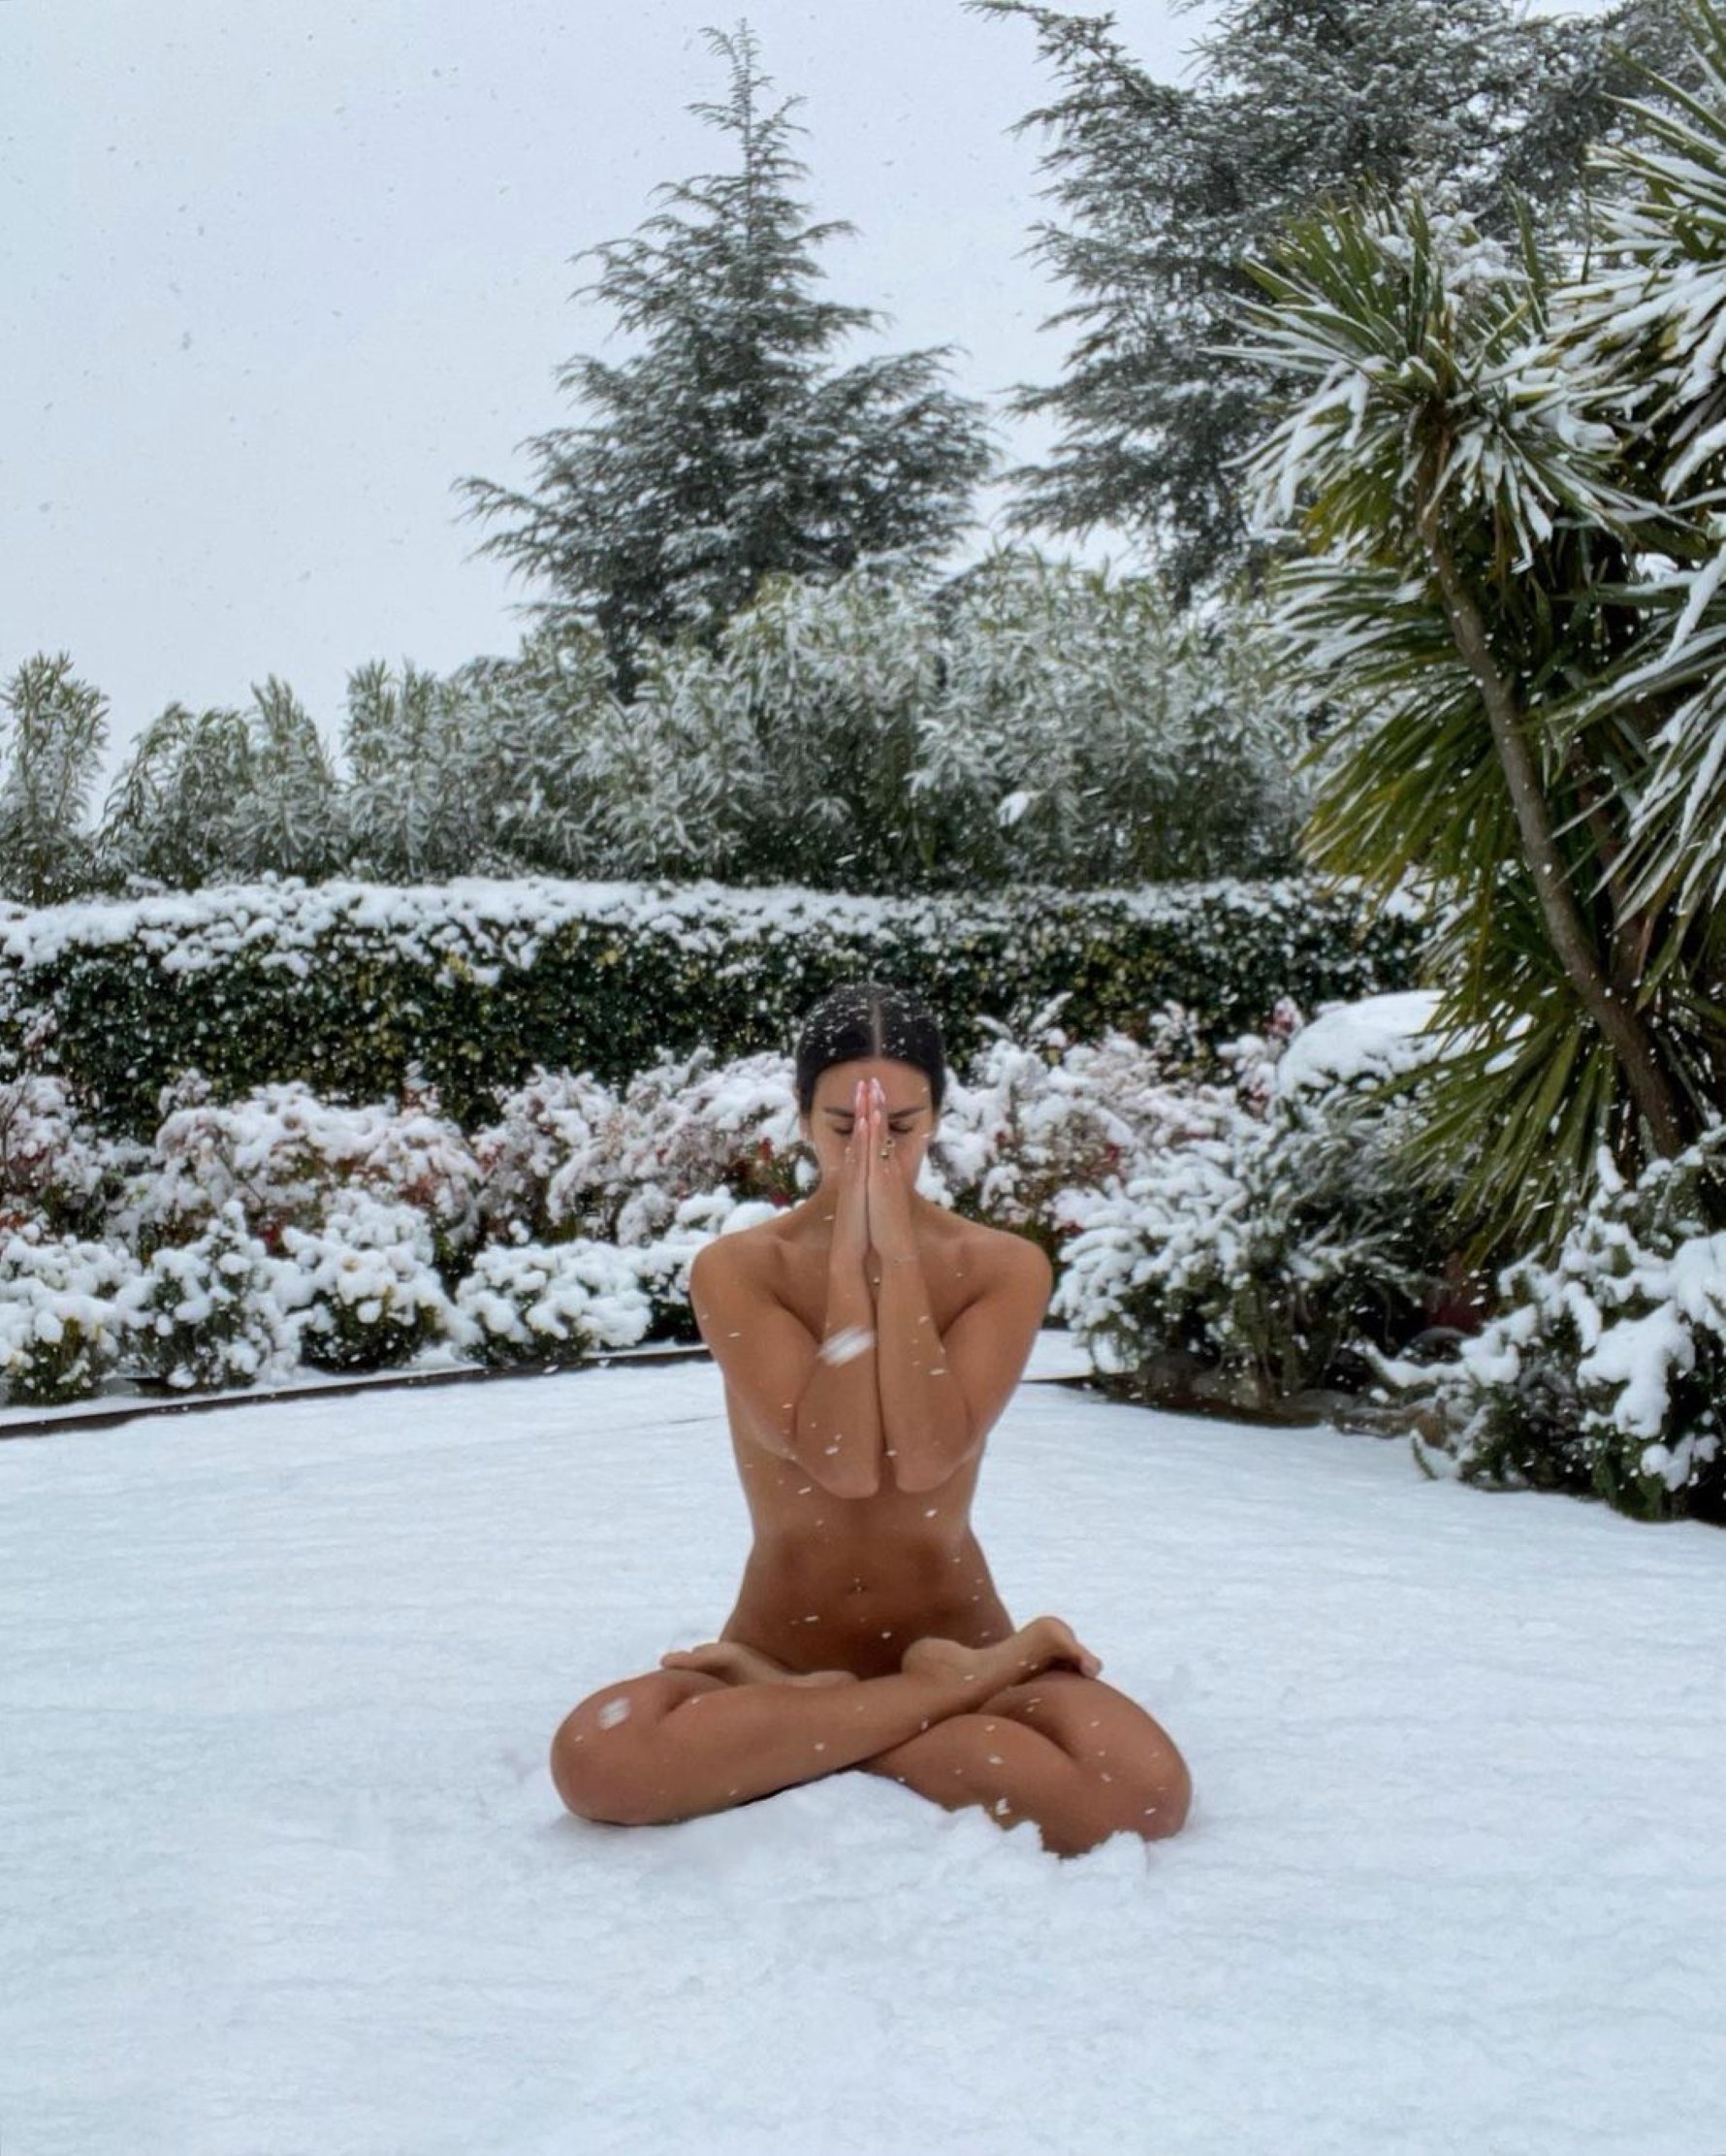 Atonyinen Pedroche per la seva foto despullada a la neu: "media neurona"